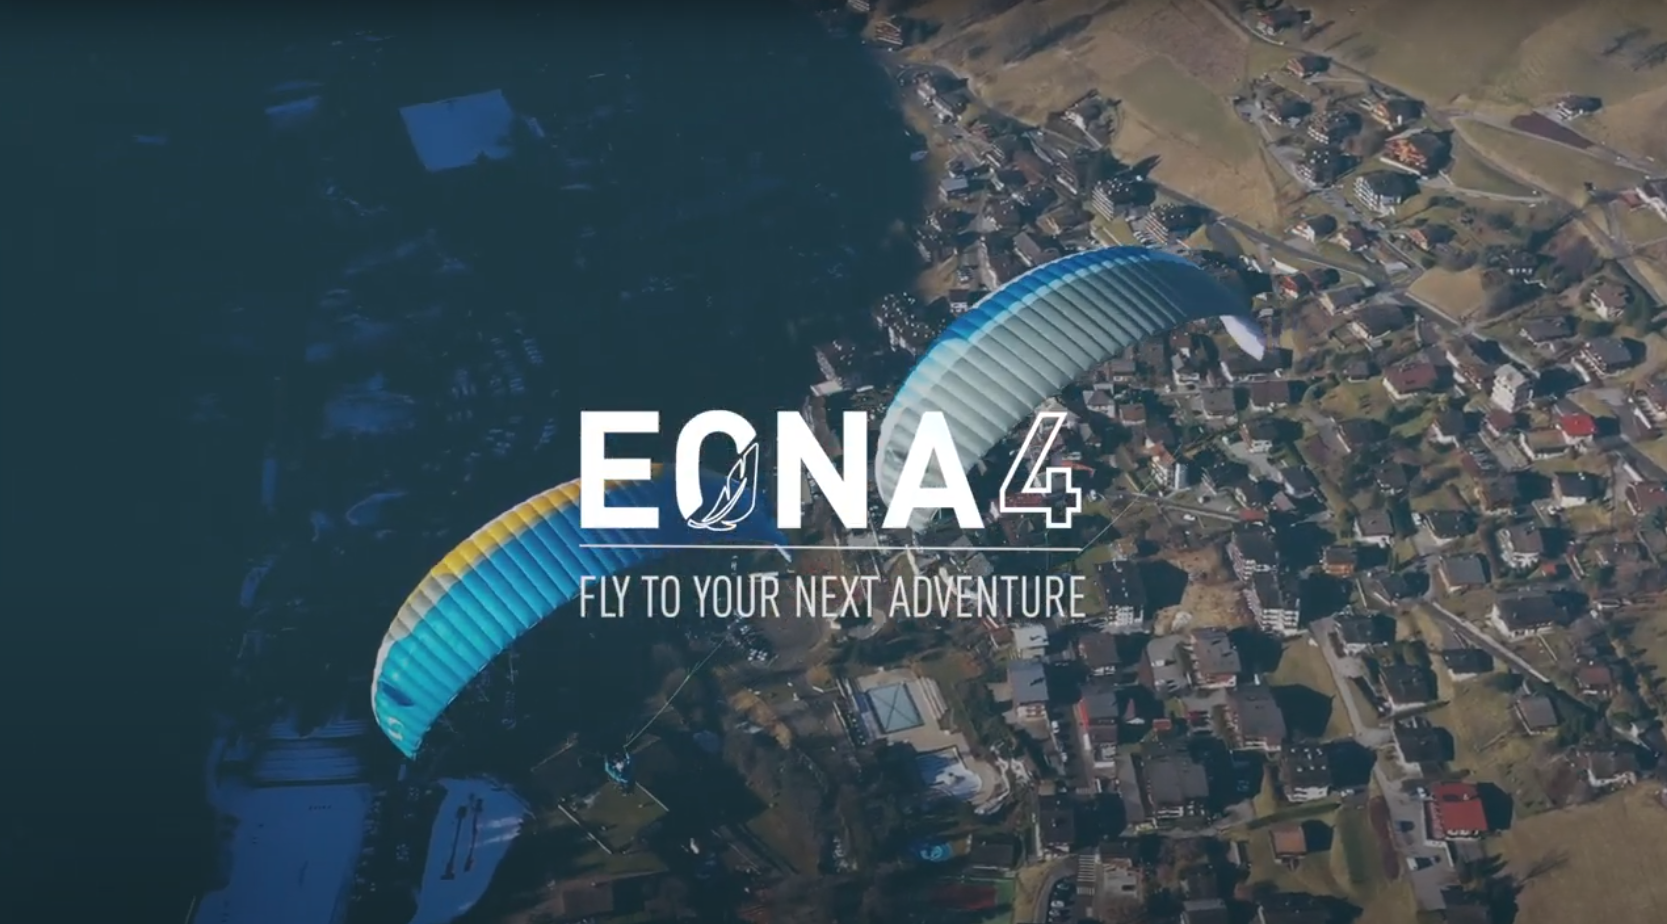 thumbnail des Videos, in dem die technischen Details von EONA4 vorgestellt werden